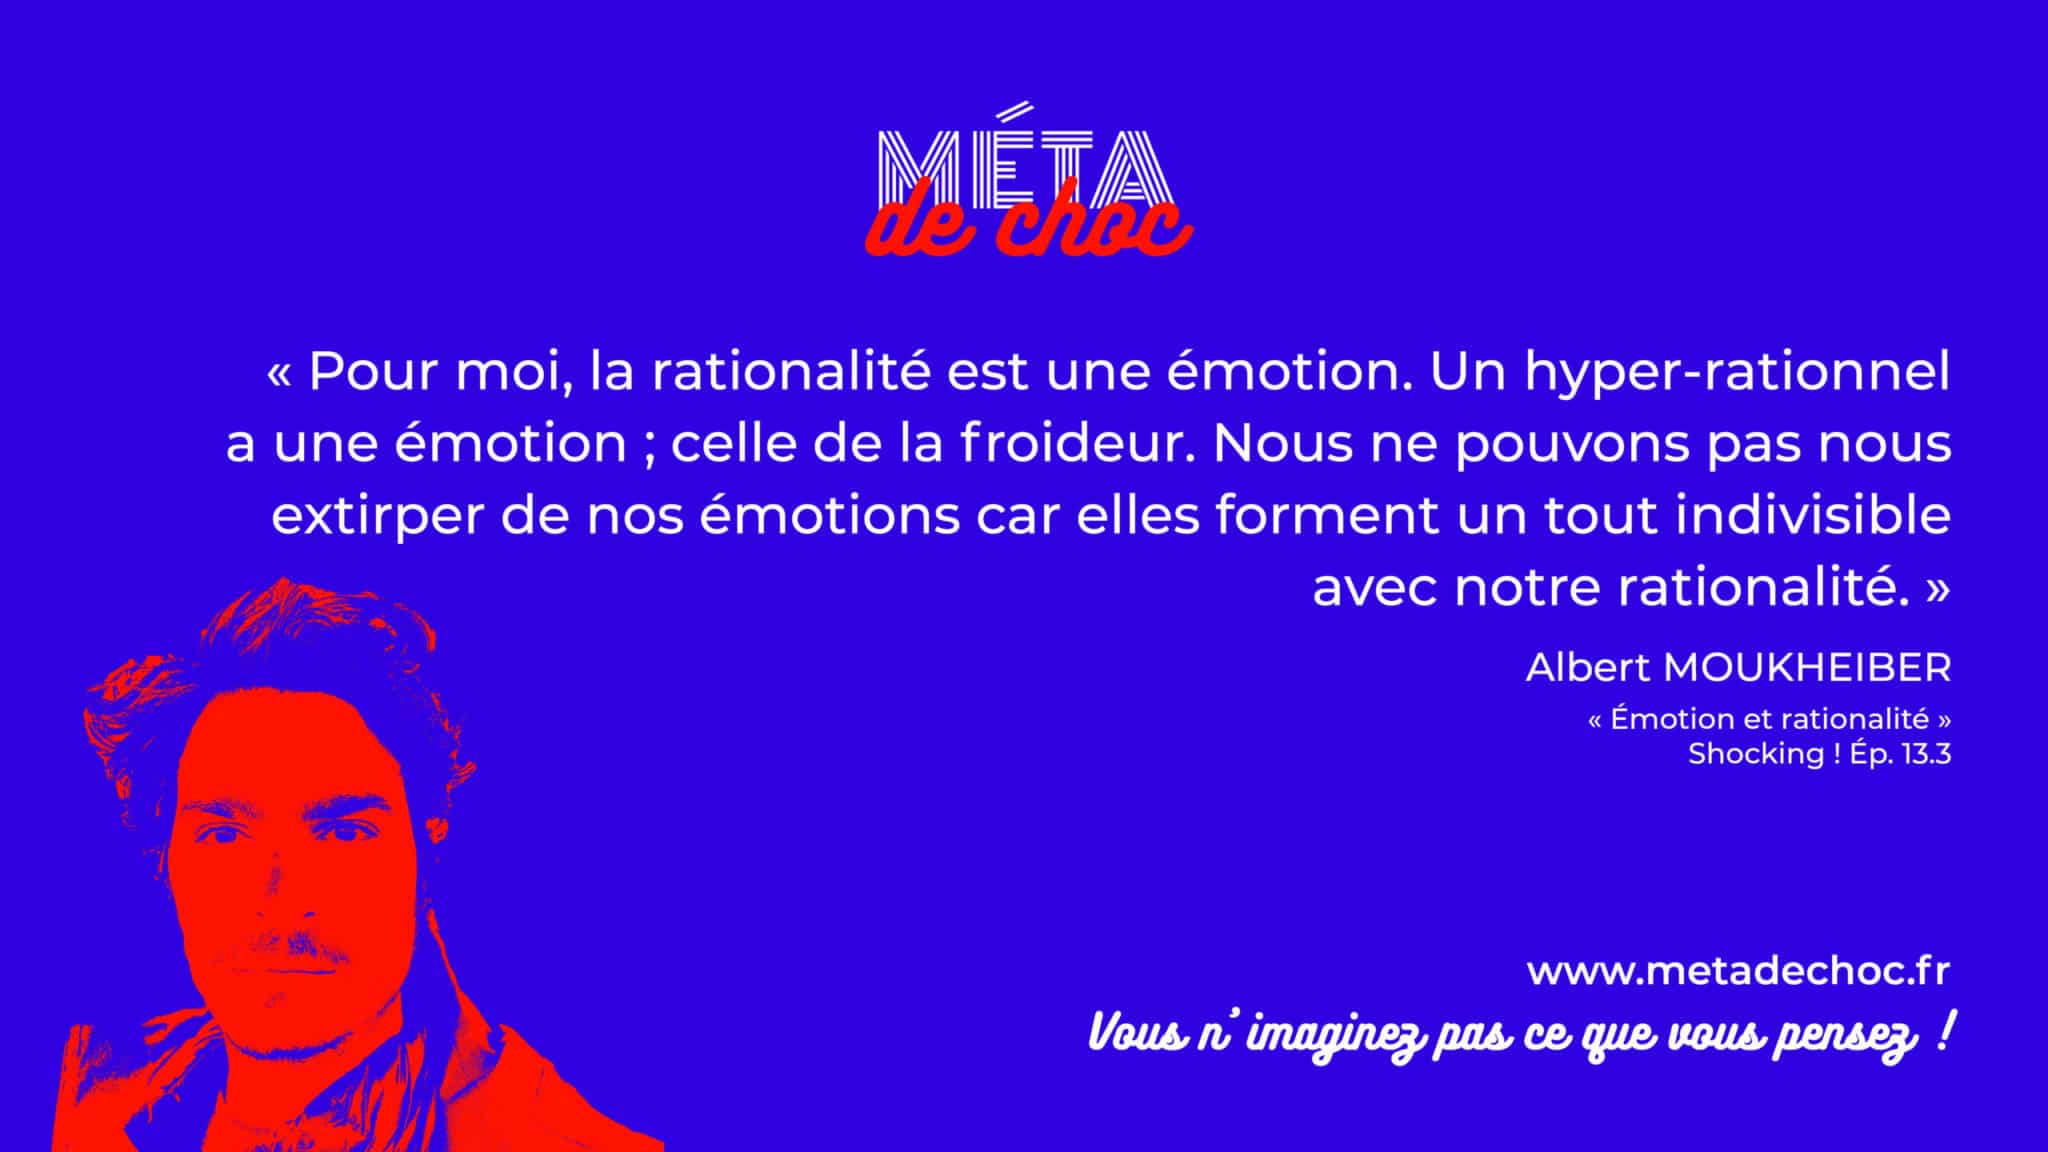 Thème du mème :  | Citation :  | Auteur.rice : Albert Moukheiber | Émission : Émotion et rationalité | Image d'illustration : 